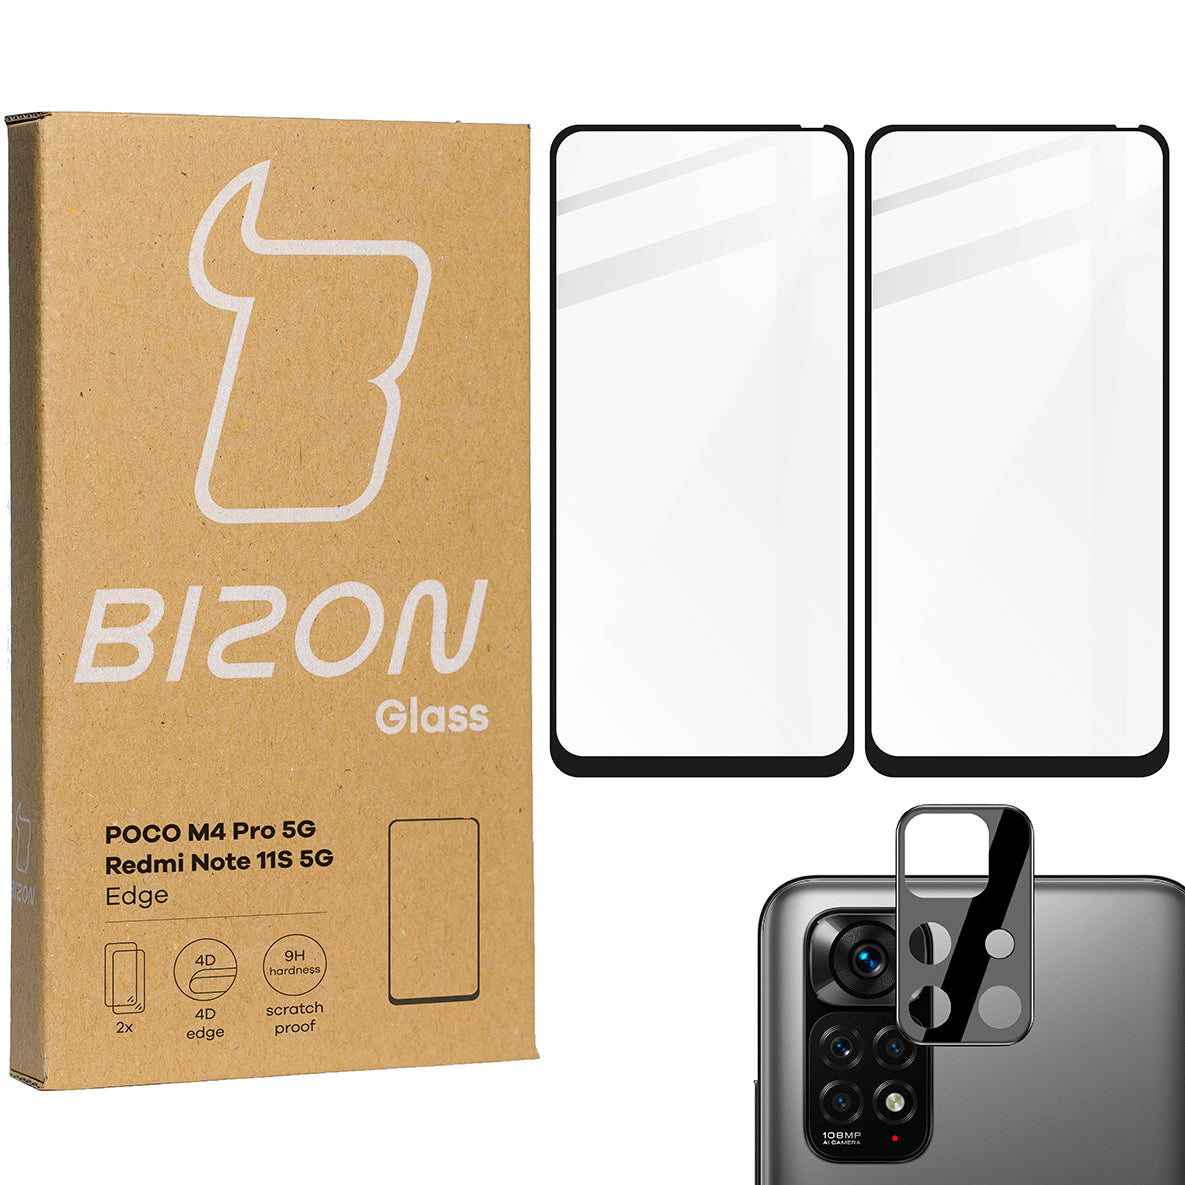 Gehärtetes Glas Bizon Glass Edge - 2 Stück + Kameraschutz für Poco M4 Pro 5G / Redmi Note 11S 5G, Schwarz